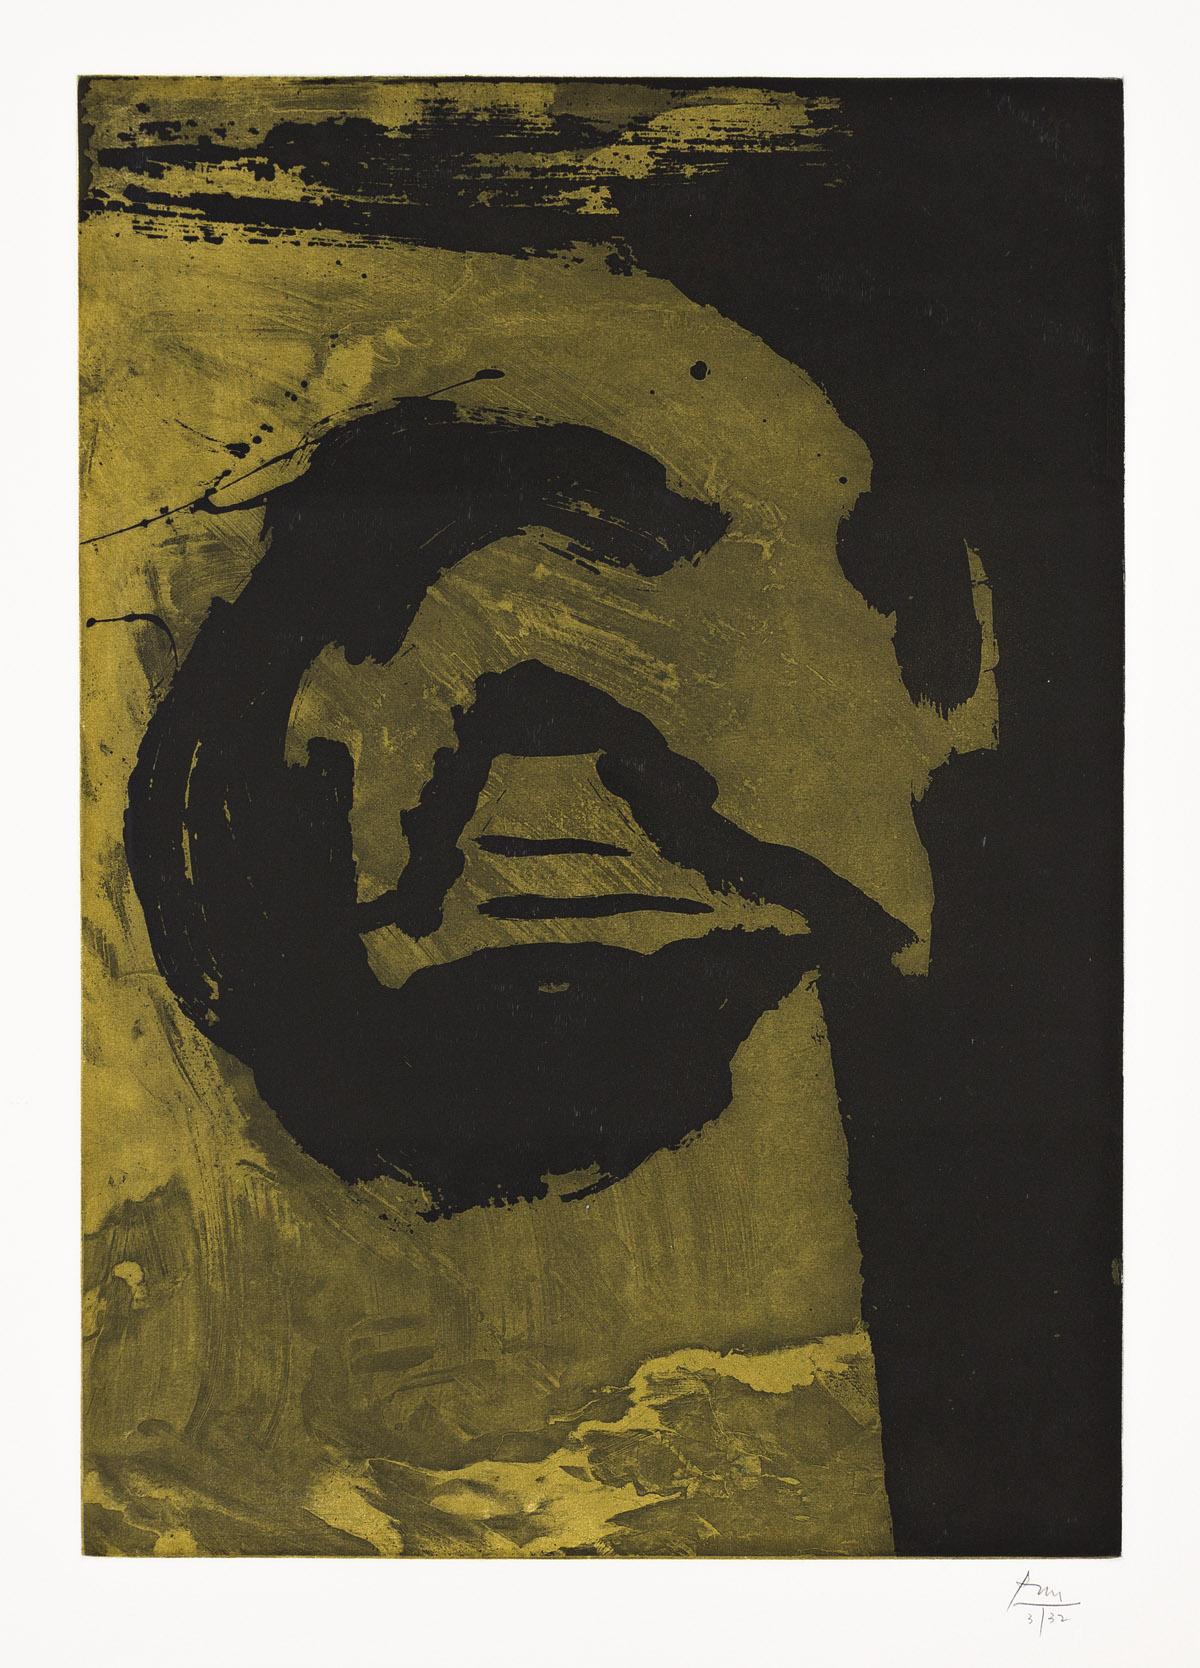 Abstract Print Robert Motherwell - Panneau primaire VI (Moss)